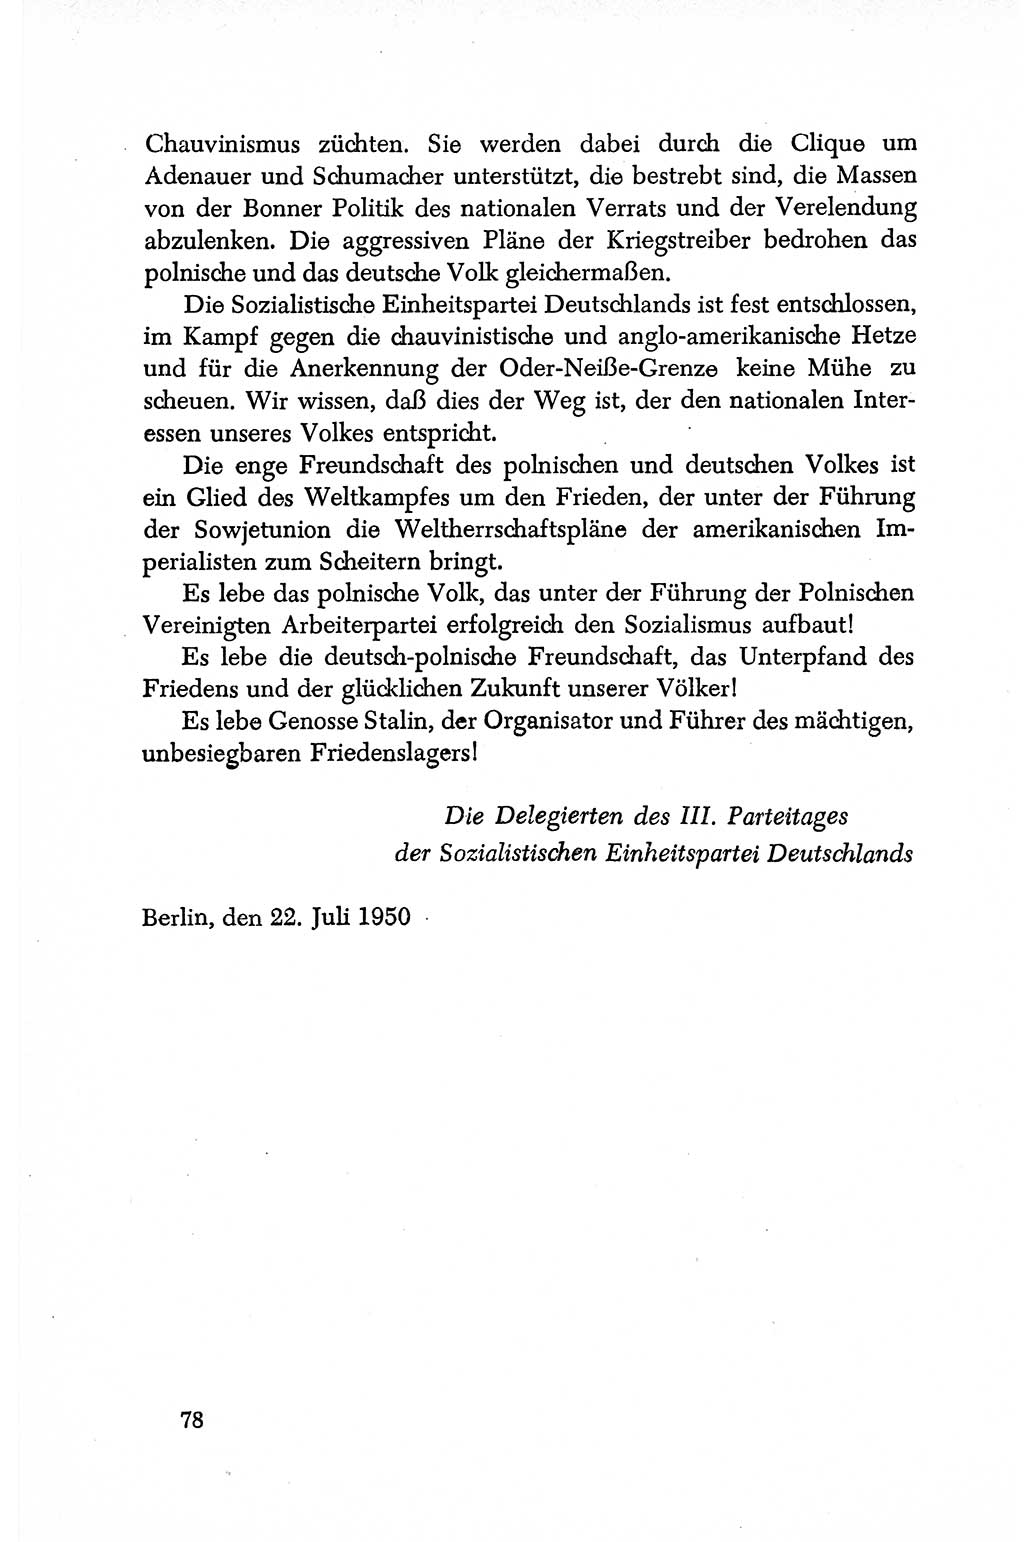 Dokumente der Sozialistischen Einheitspartei Deutschlands (SED) [Deutsche Demokratische Republik (DDR)] 1950-1952, Seite 78 (Dok. SED DDR 1950-1952, S. 78)